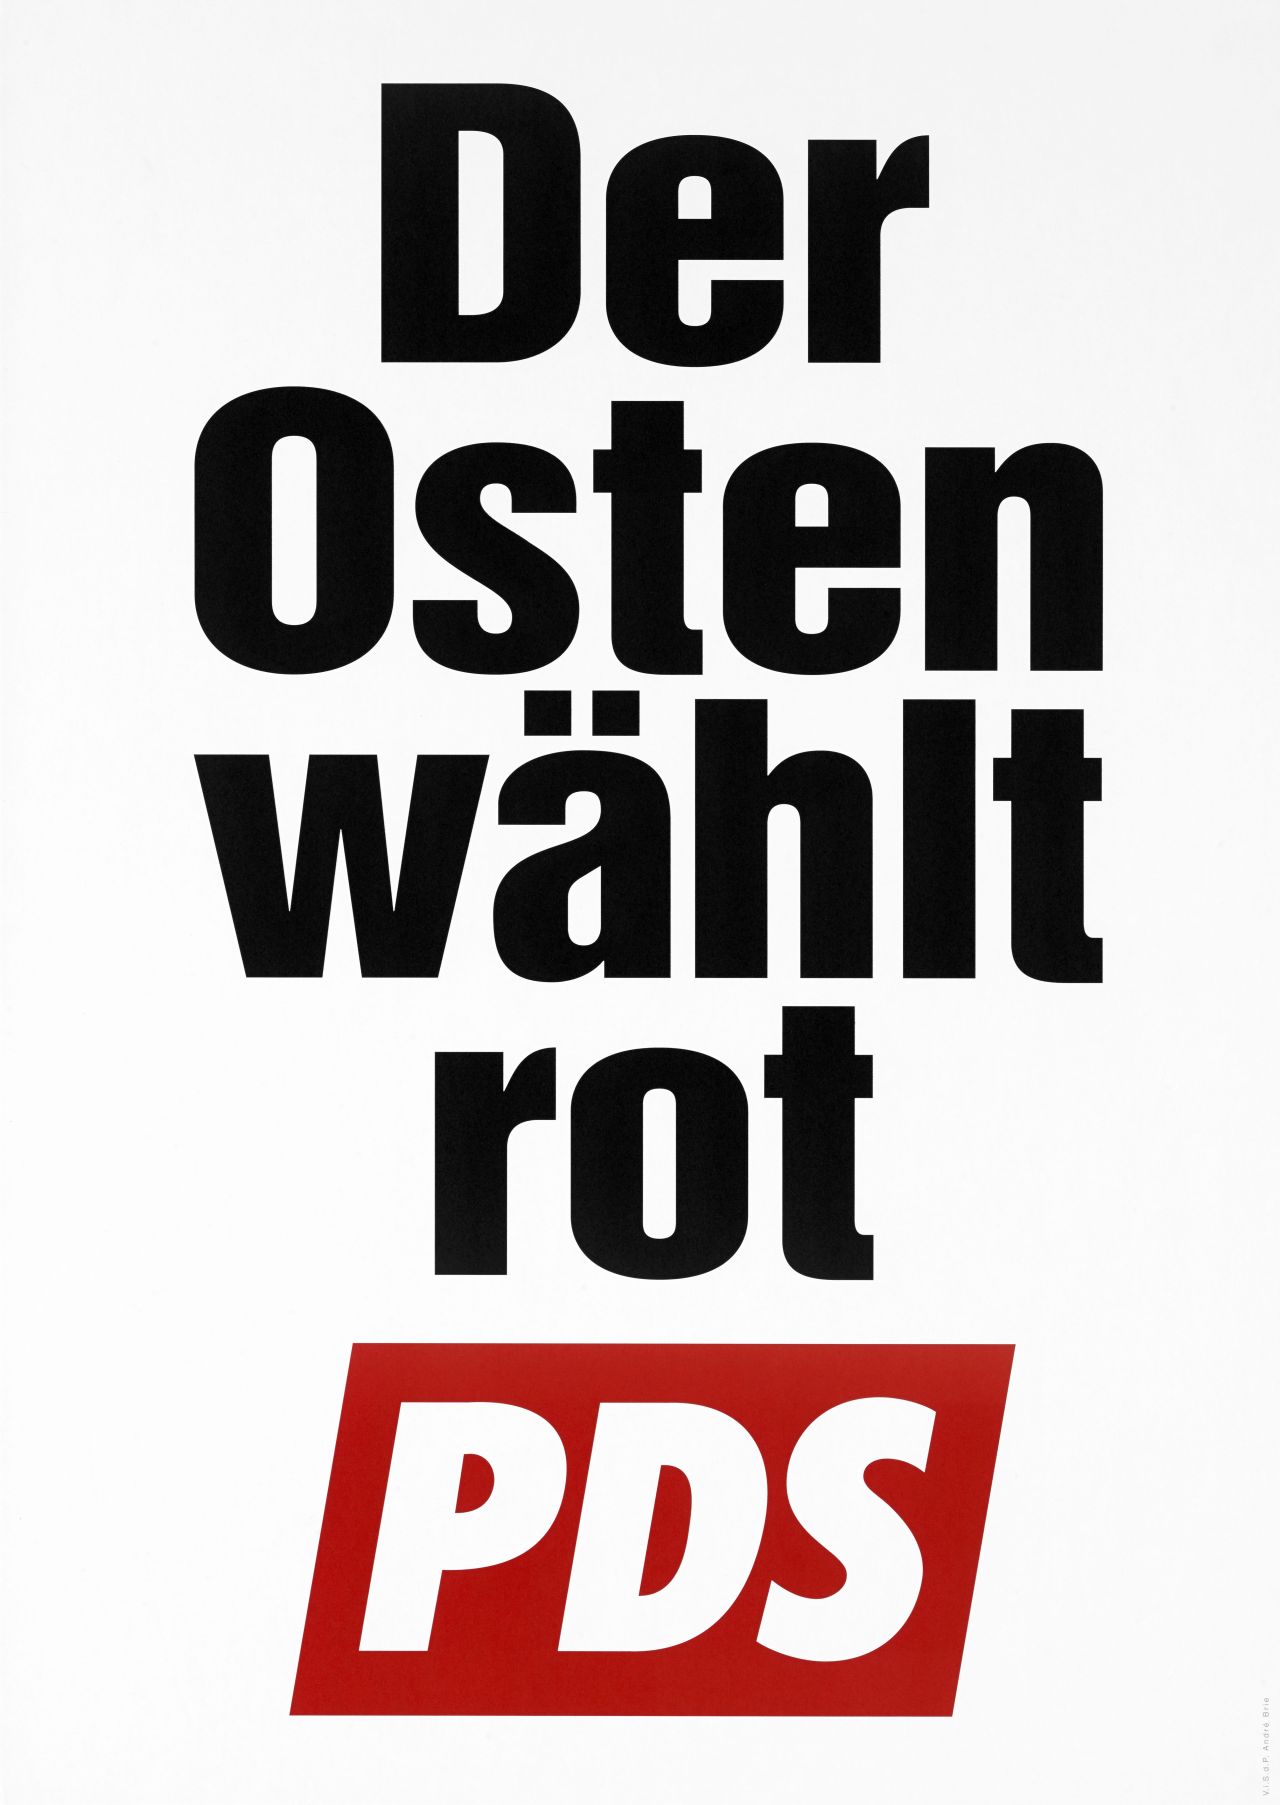 Wahlplakat, Hochformat. Bezeichnung in großer schwarzer Schrift (vierzeilig) auf weißem Grund. Unten weiß auf rot: PDS.